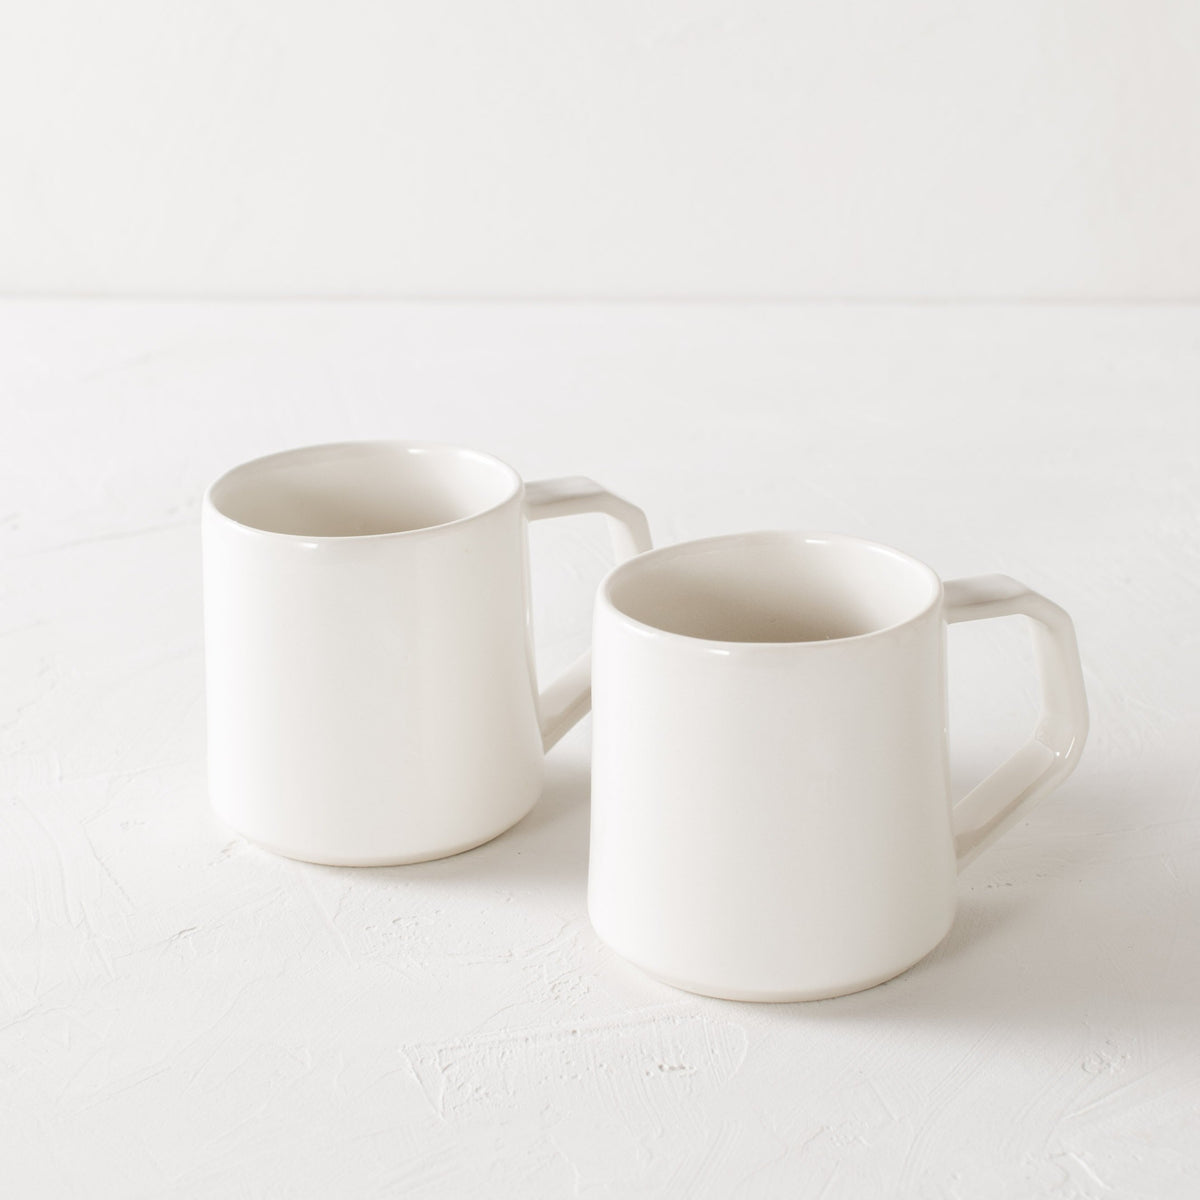 http://shopconvivial.com/cdn/shop/products/Convivial-Production-Kansas-City-Ceramics-Handmade-Ceramic-Mug1_1200x1200.jpg?v=1625943547